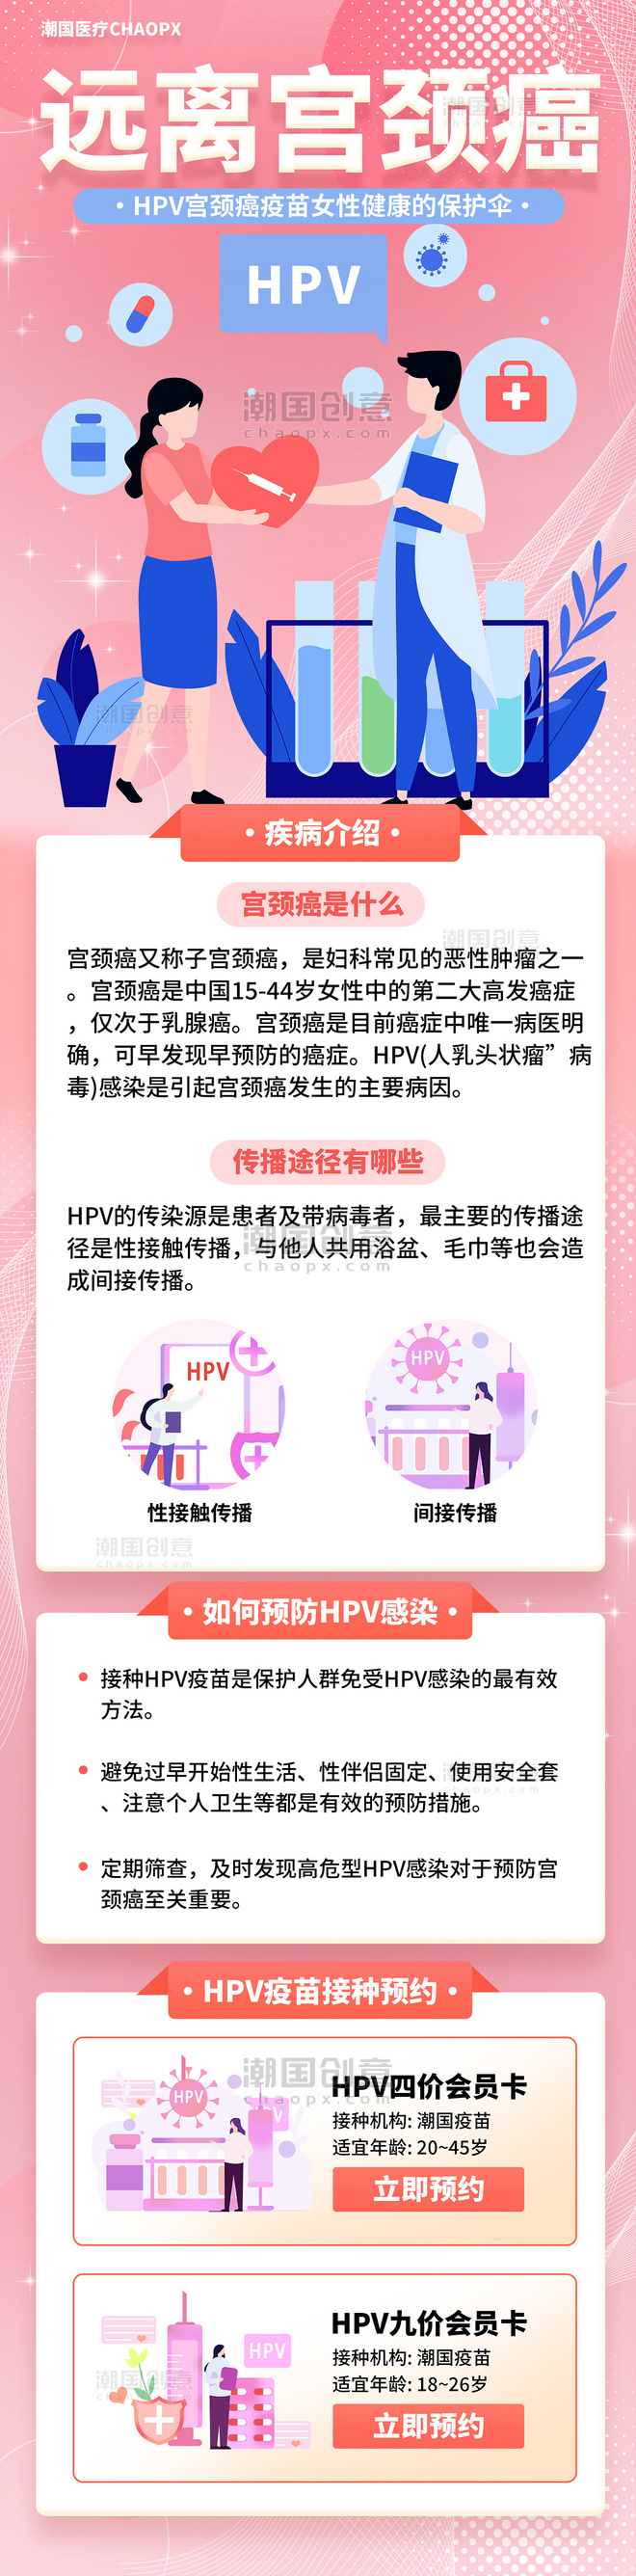 医疗健康宫颈癌疫苗HPV疫苗推广营销长图设计